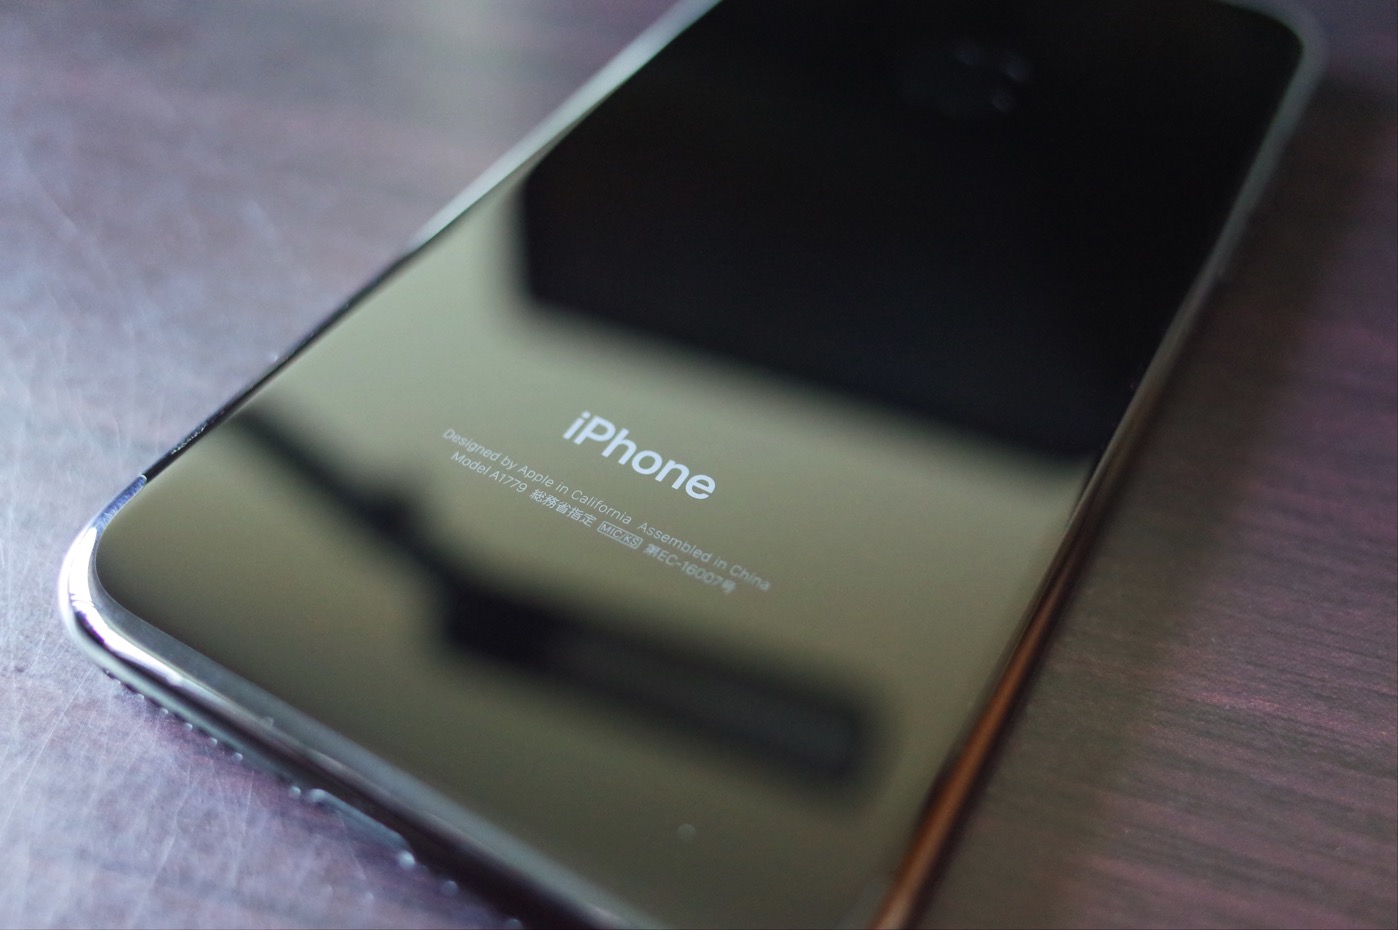 [iPhone]新型iPhone 7 ジェットブラック とiPhone 7 ローズゴールドを並べて比較してみたよ